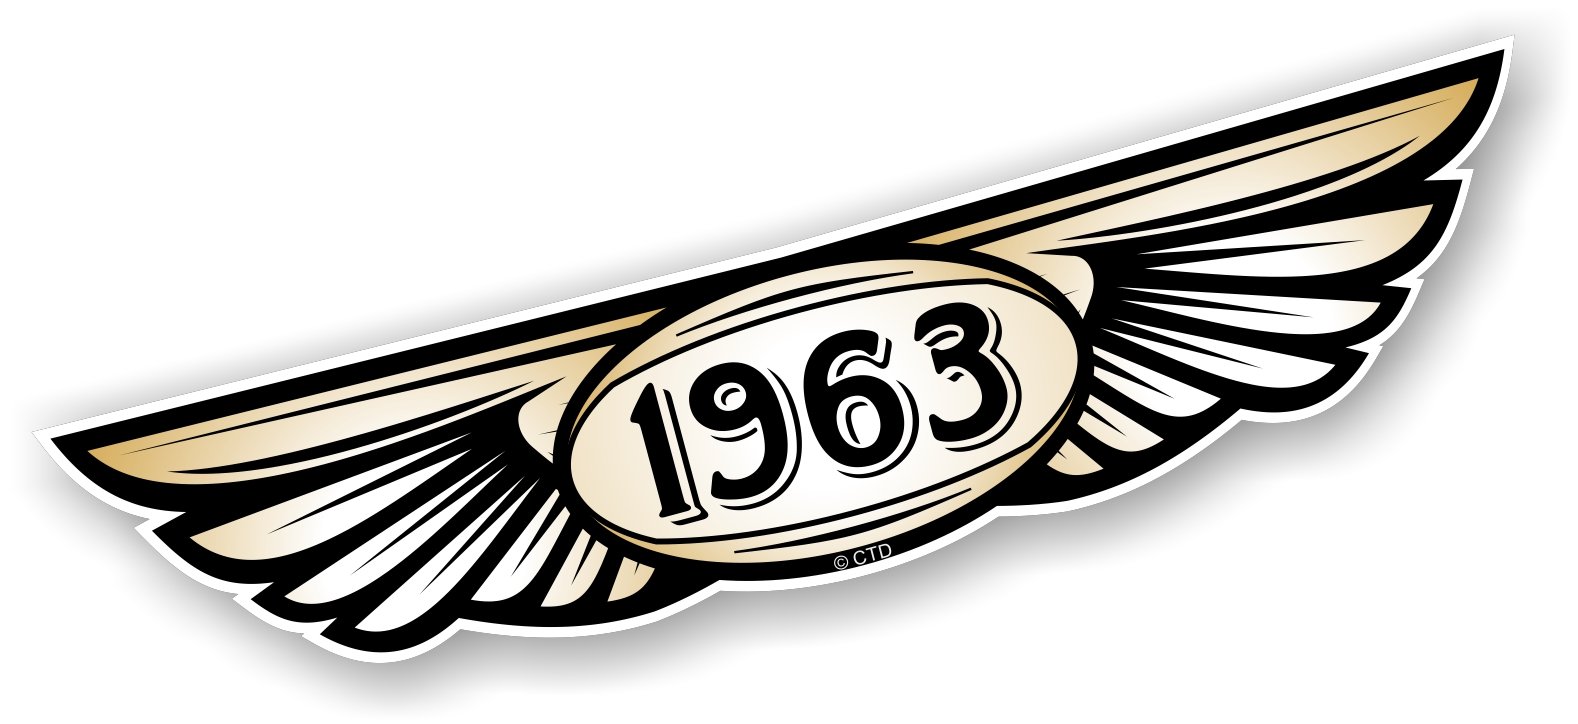 Jahr datiert 1963 Traditionelle geflügelten Emblem Design für Motorrad Biker Helm Auto-Aufkleber Vinyl Aufkleber 130 x 30 mm von CTD